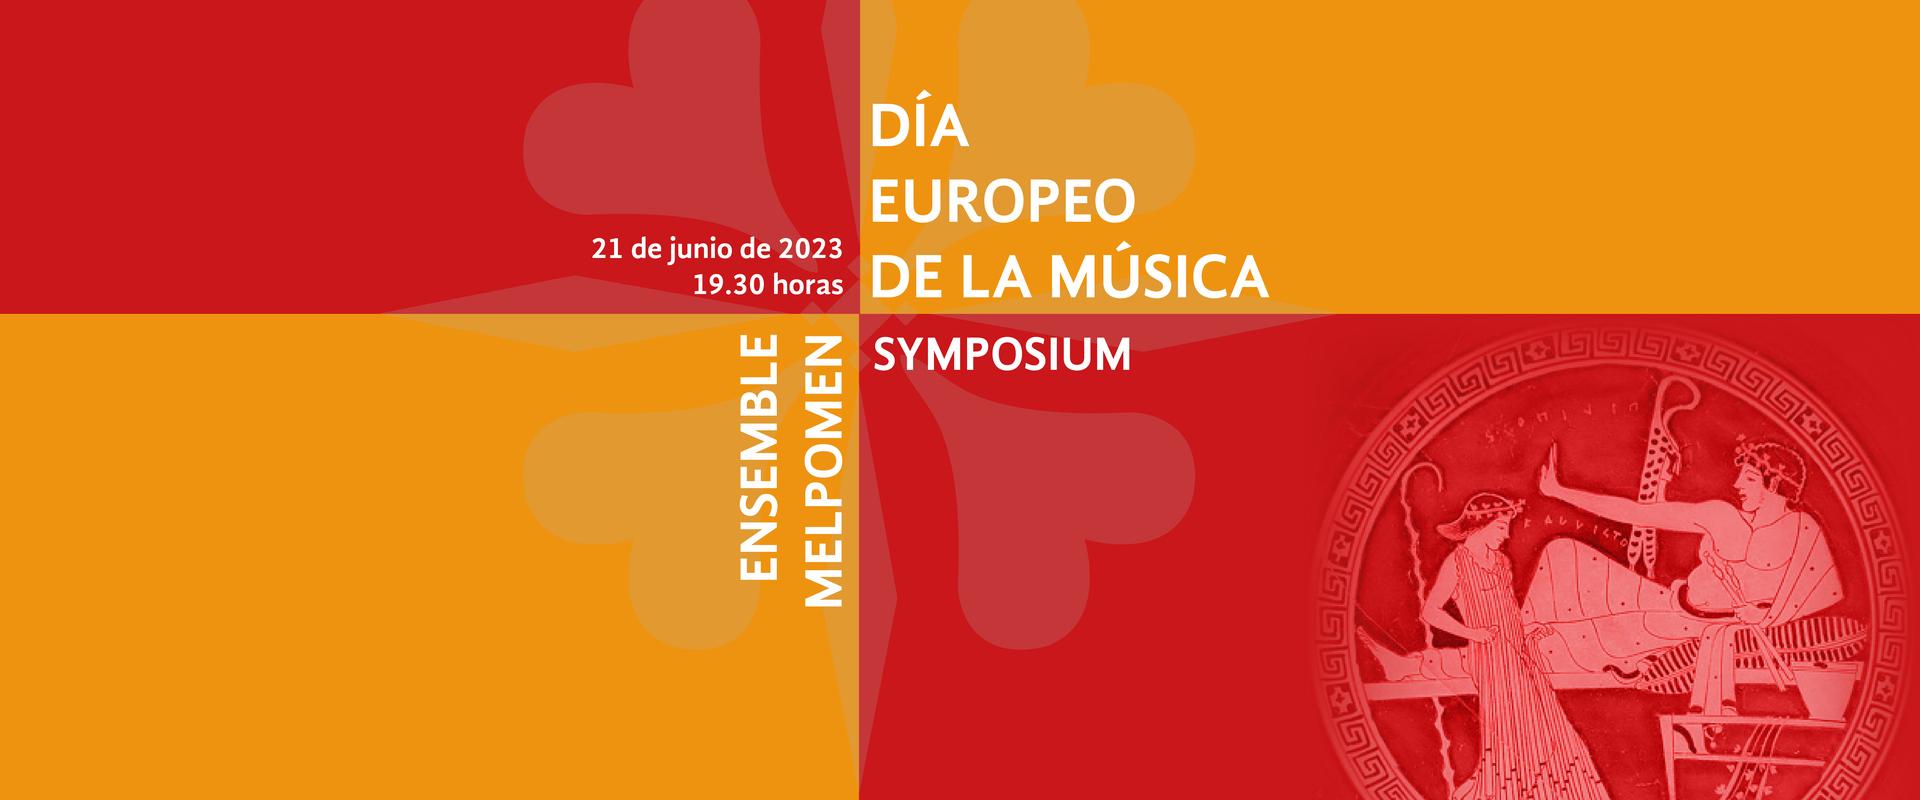 día europeo de la música en la villa romana la olmeda el 21 de junio con música y danza de ensemble melpomen y symposium